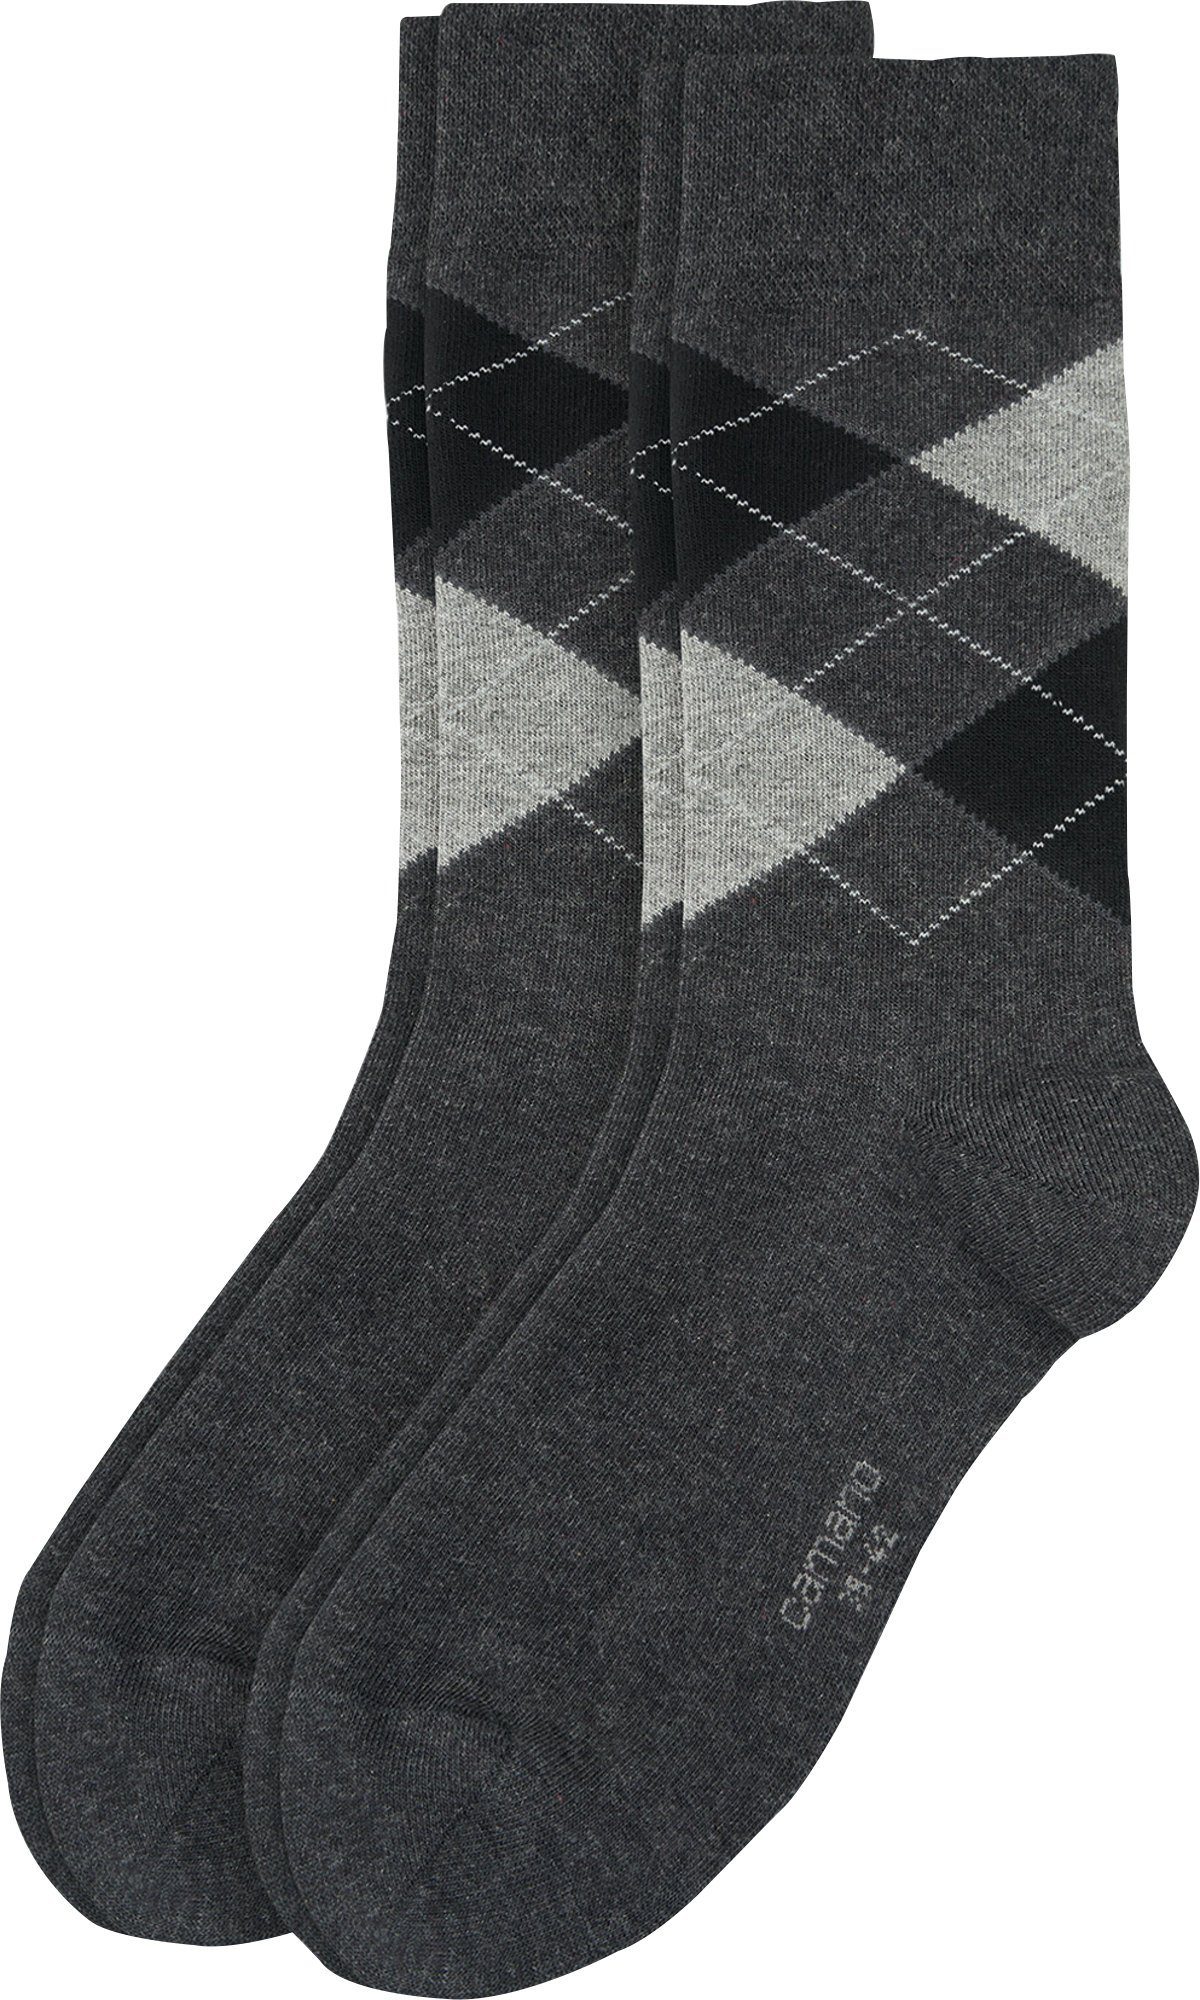 Camano Socken Herren-Socken 2 Paar gemustert anthrazit | Socken